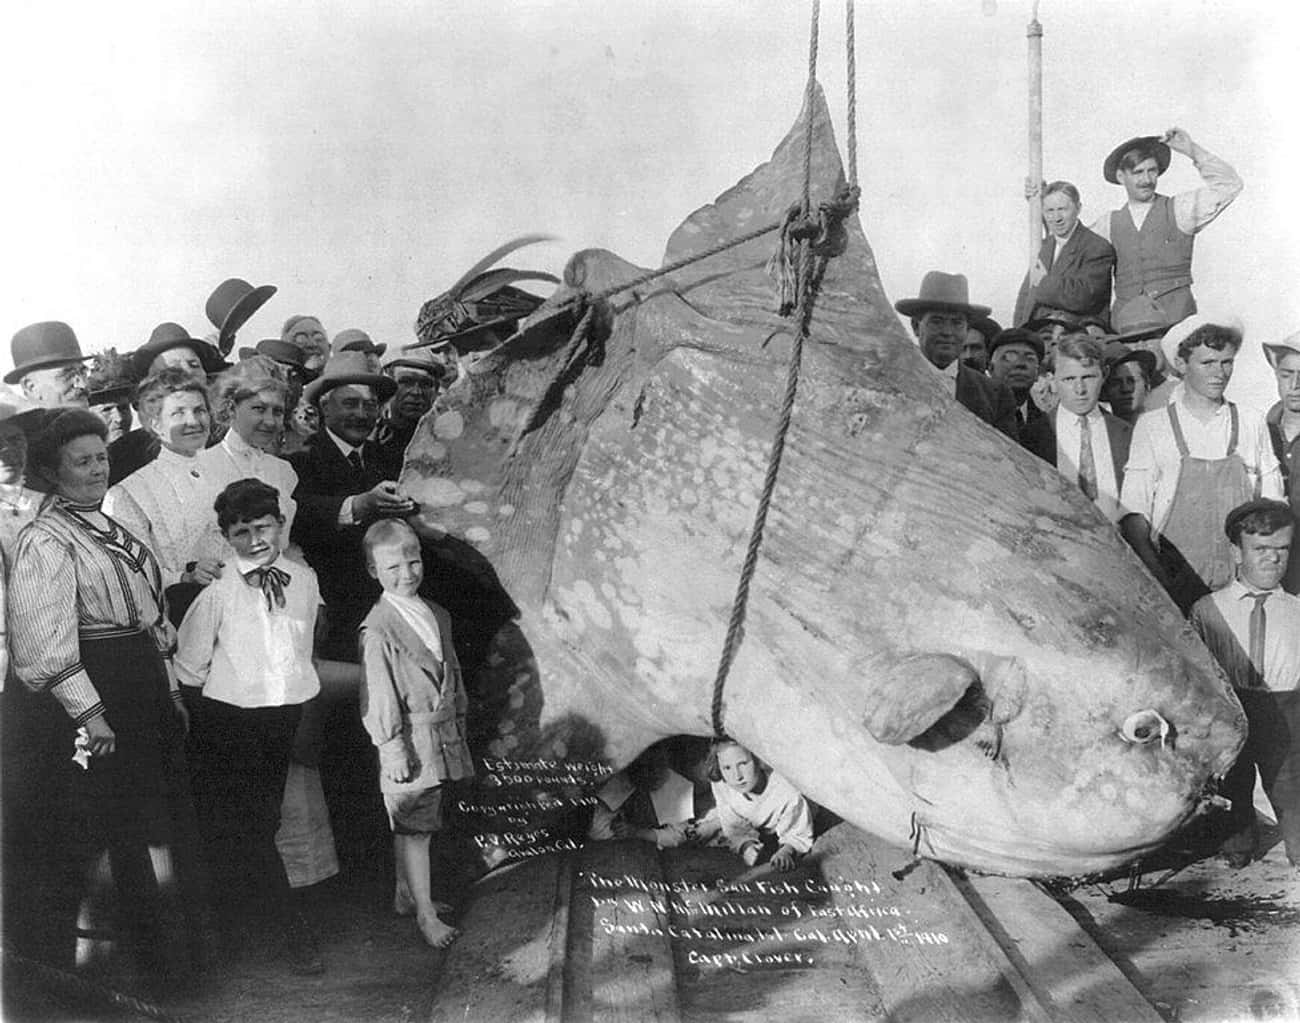 A 3,500-Pound Sunfish (1910)